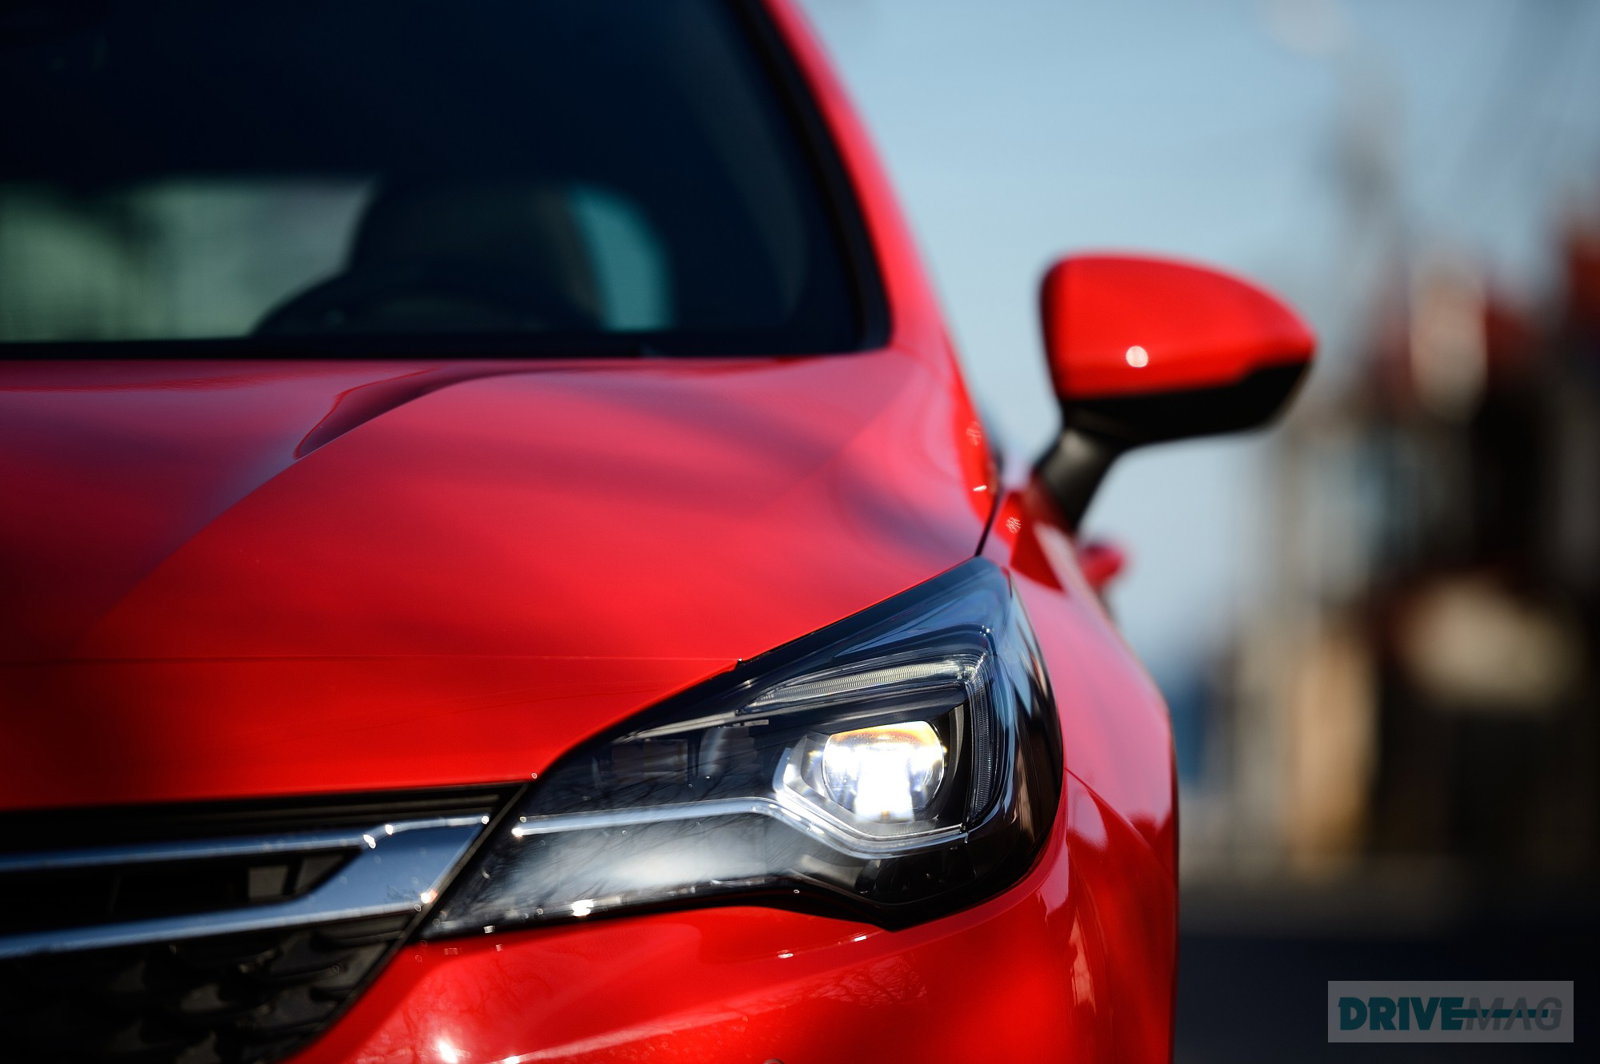 2015 Opel Astra K Imagined in Sportier Three-Door GTC Variant -  autoevolution